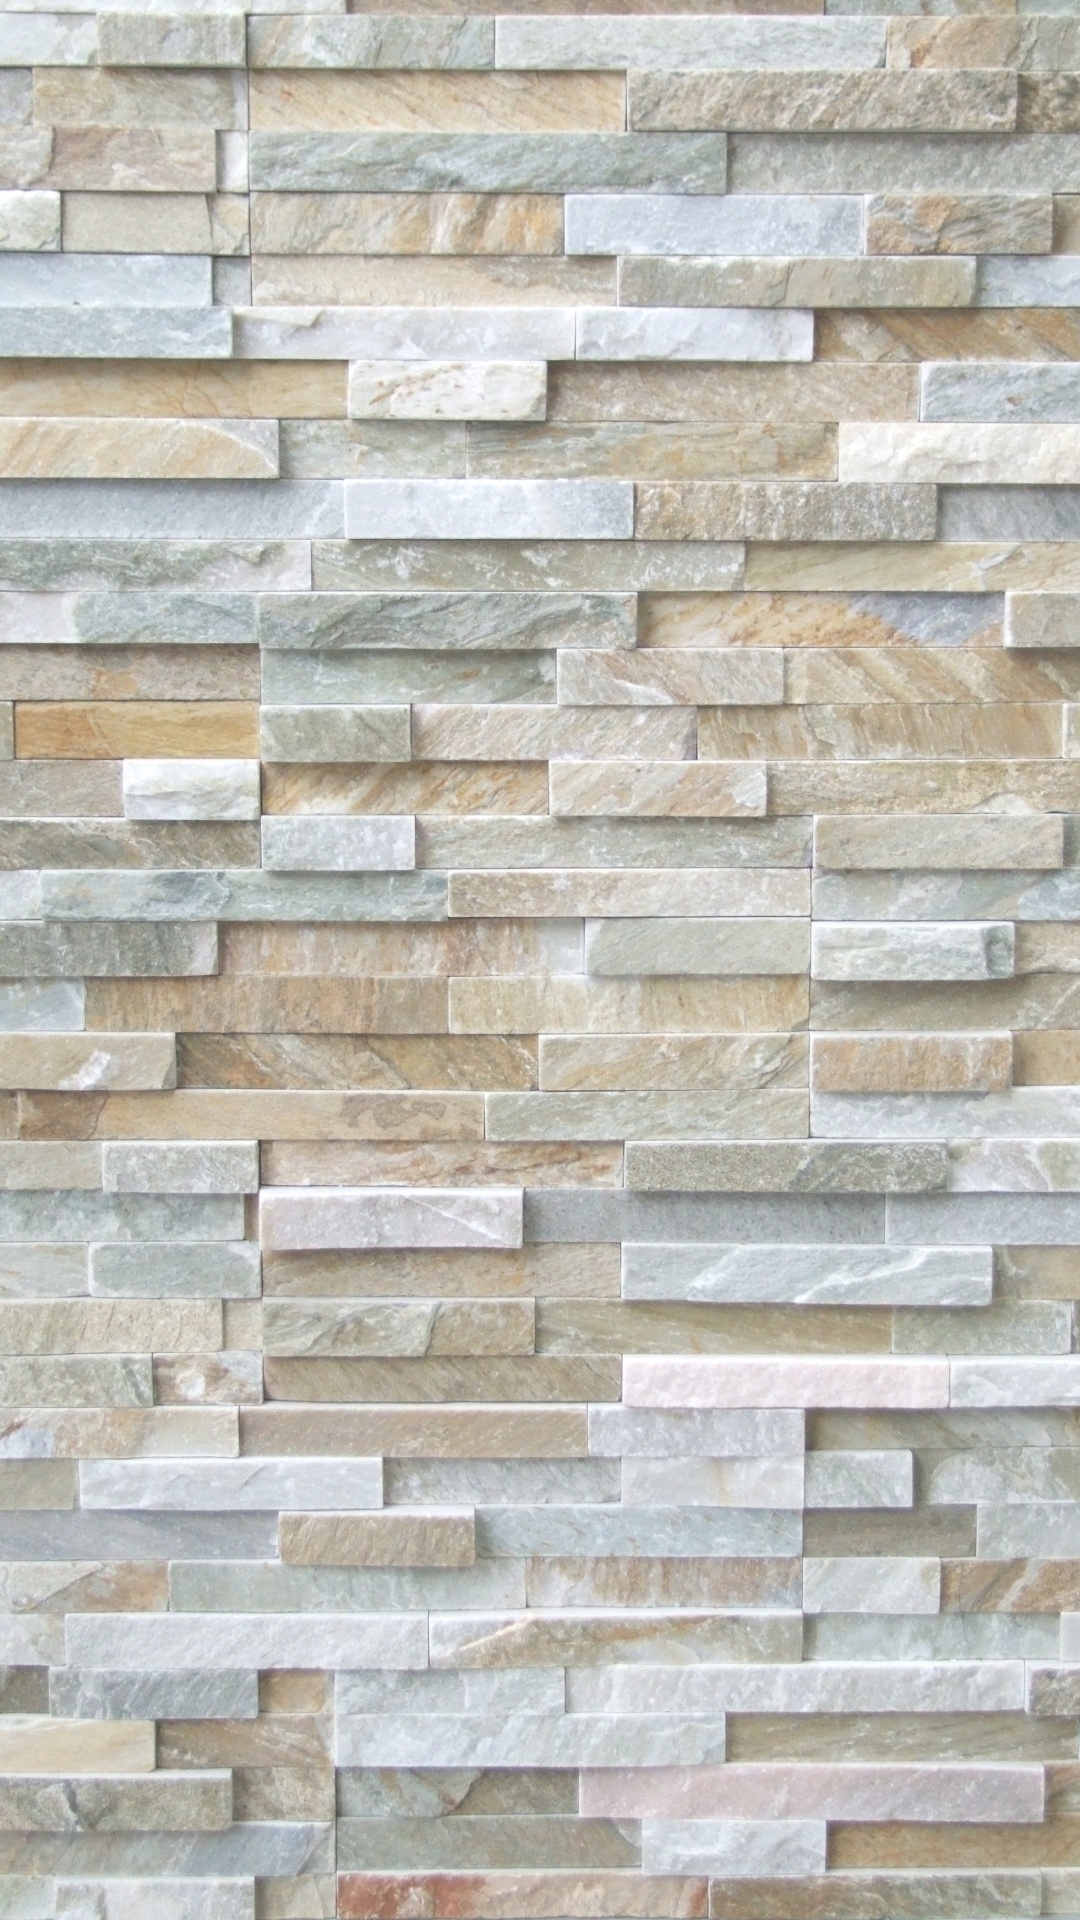 石饰面, 瓷砖, 石壁, 石板, 砌砖 壁纸 1080x1920 允许